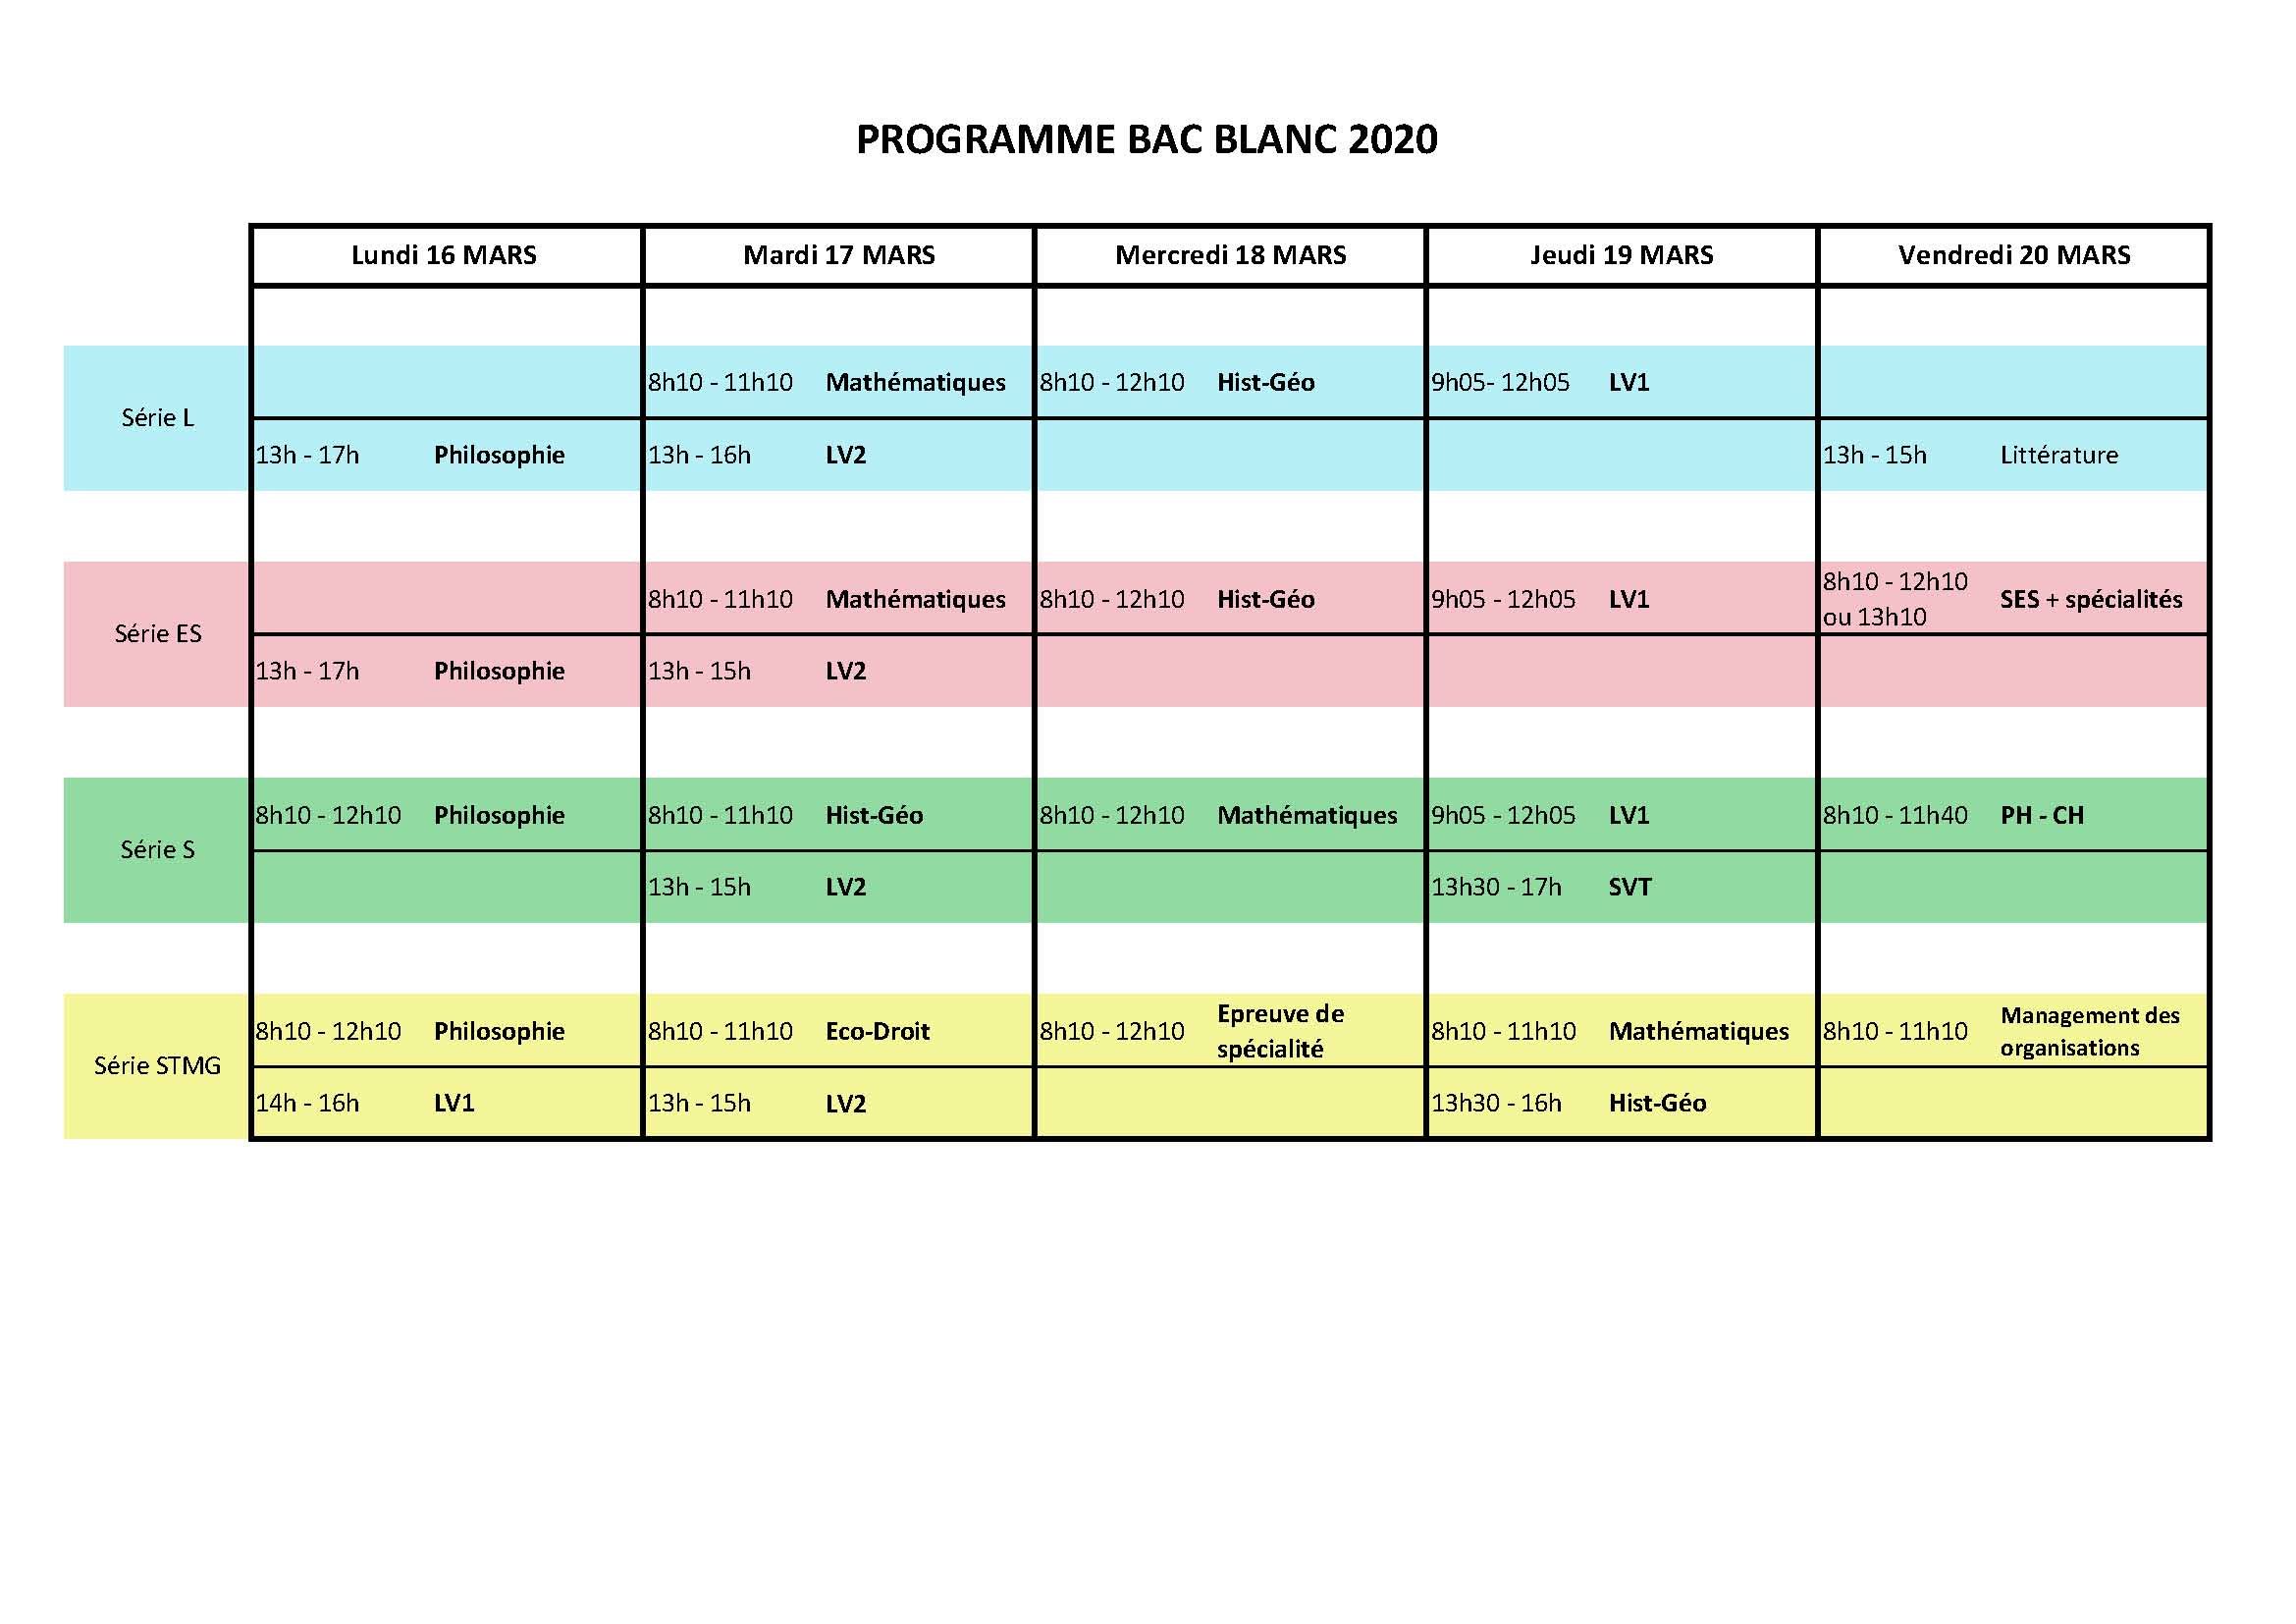 Programme_Bac_Blanc2020 (1).jpg